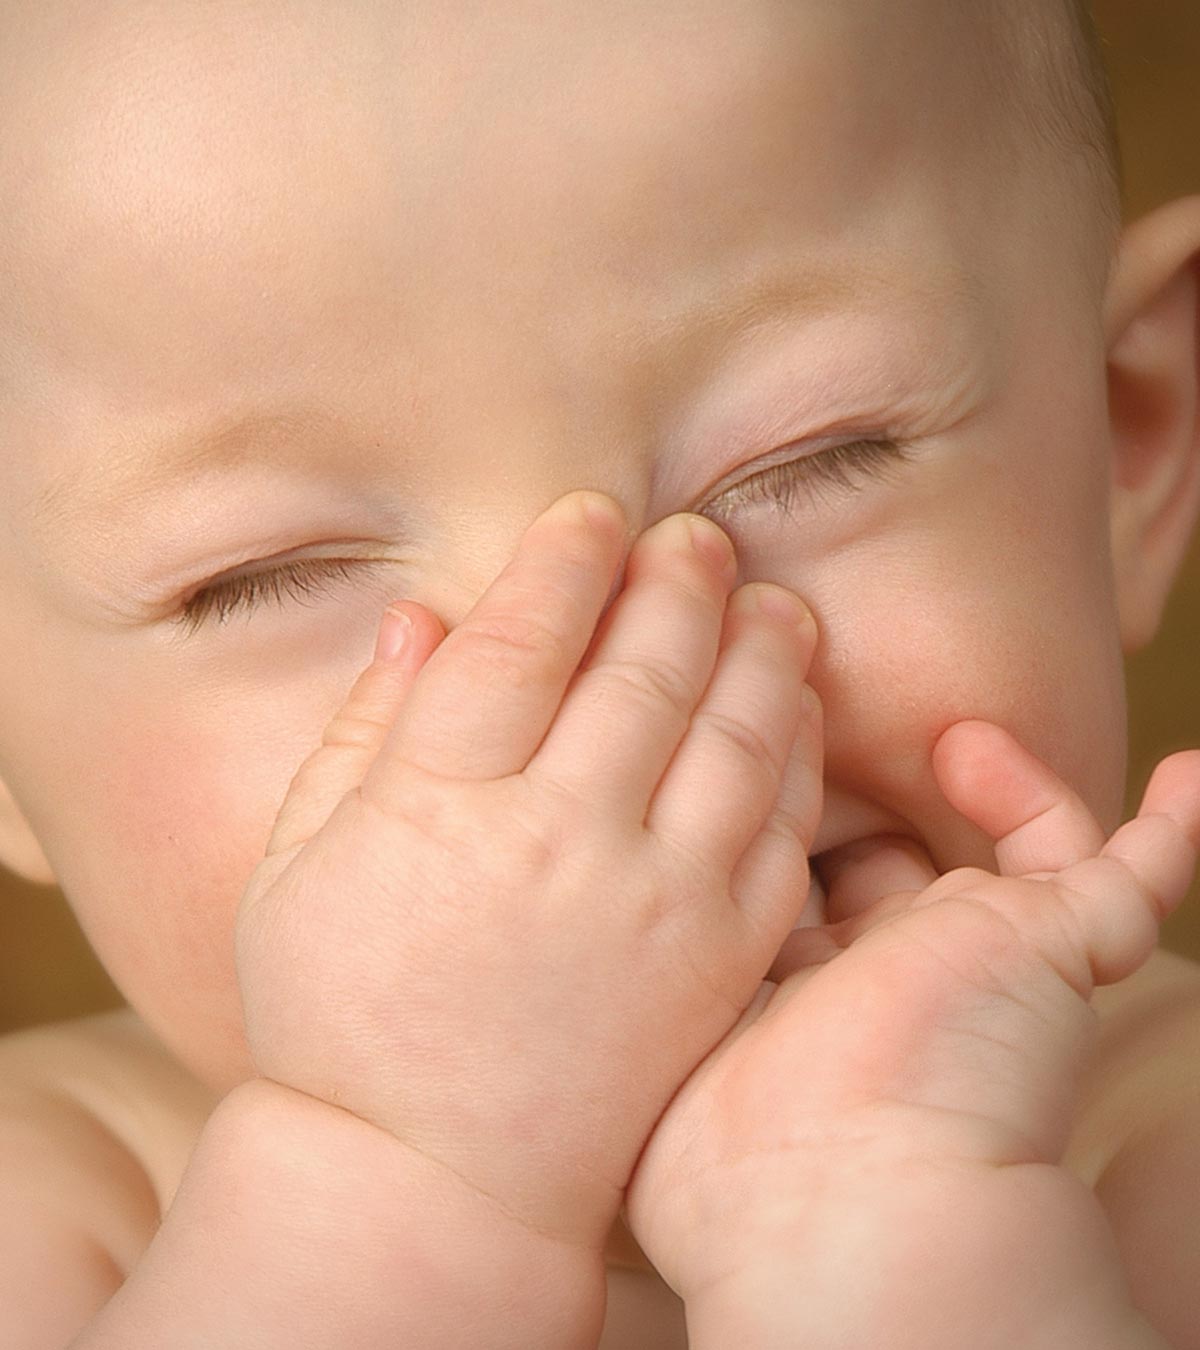 婴儿体臭:什么是正常的以及如何处理